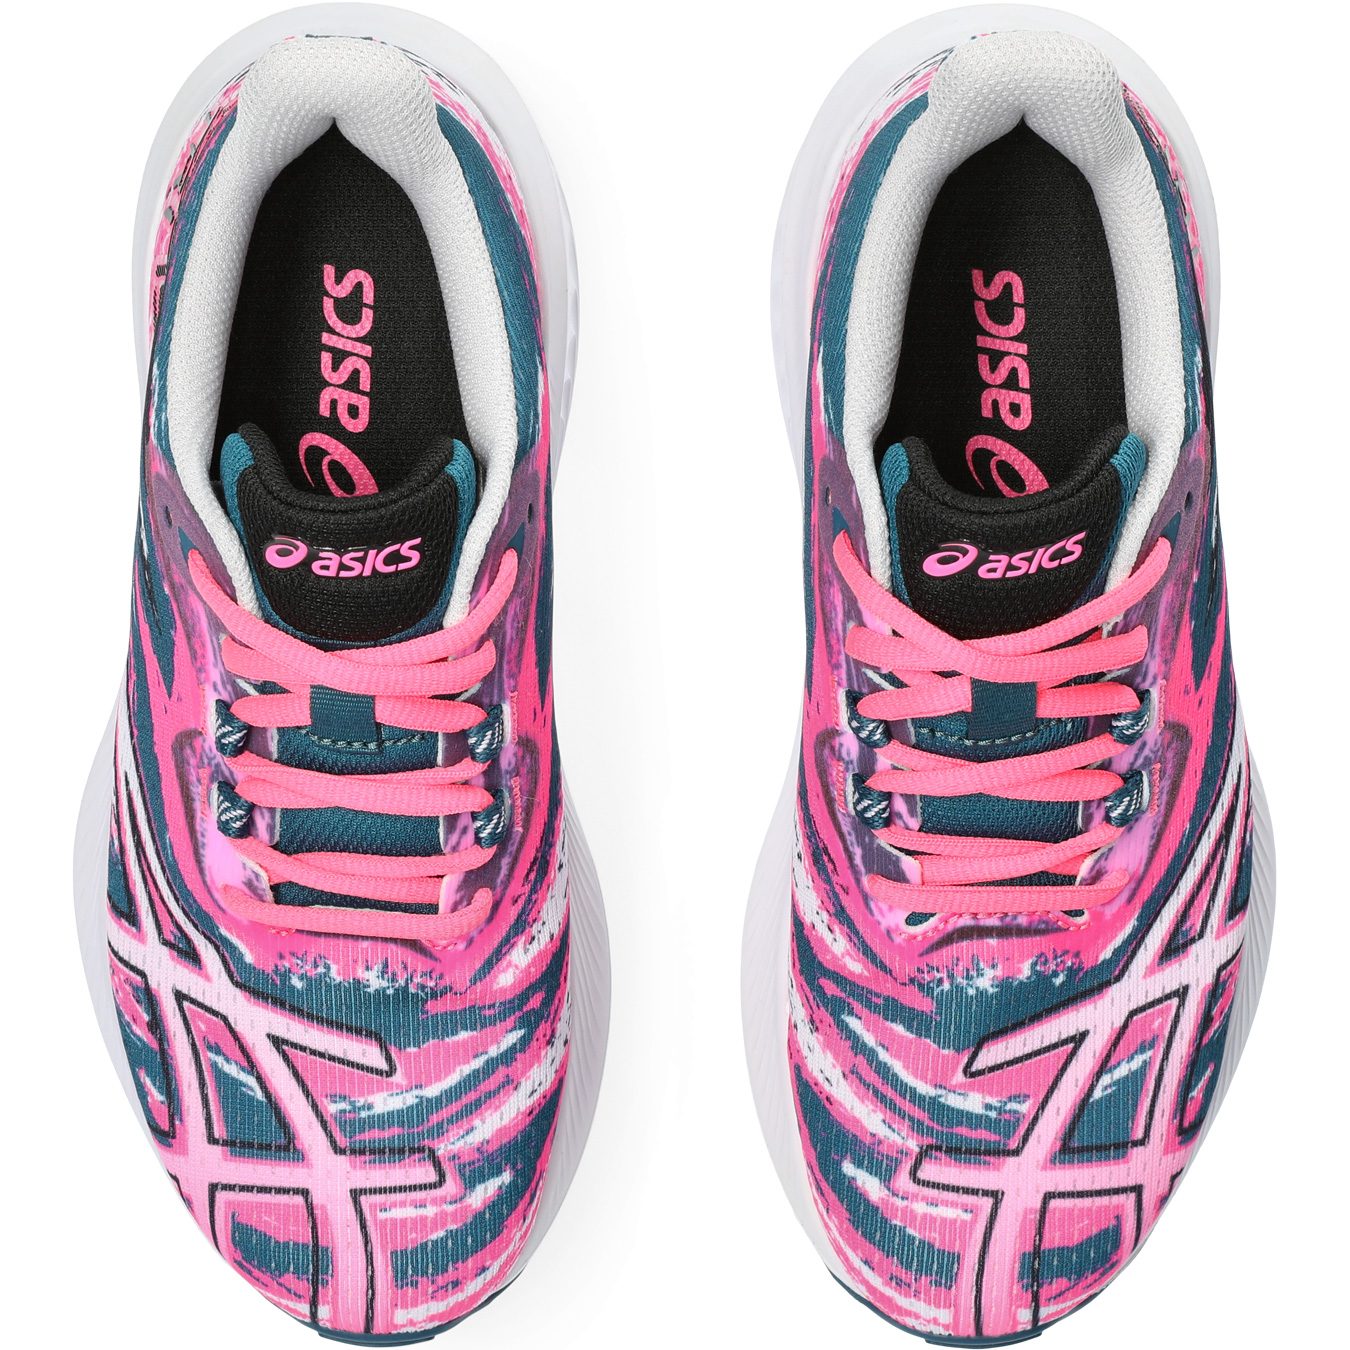 ASICS - Gel-Noosa TRI 15 Running Shop GS Shoes at Bittl hot pink Sport Kids